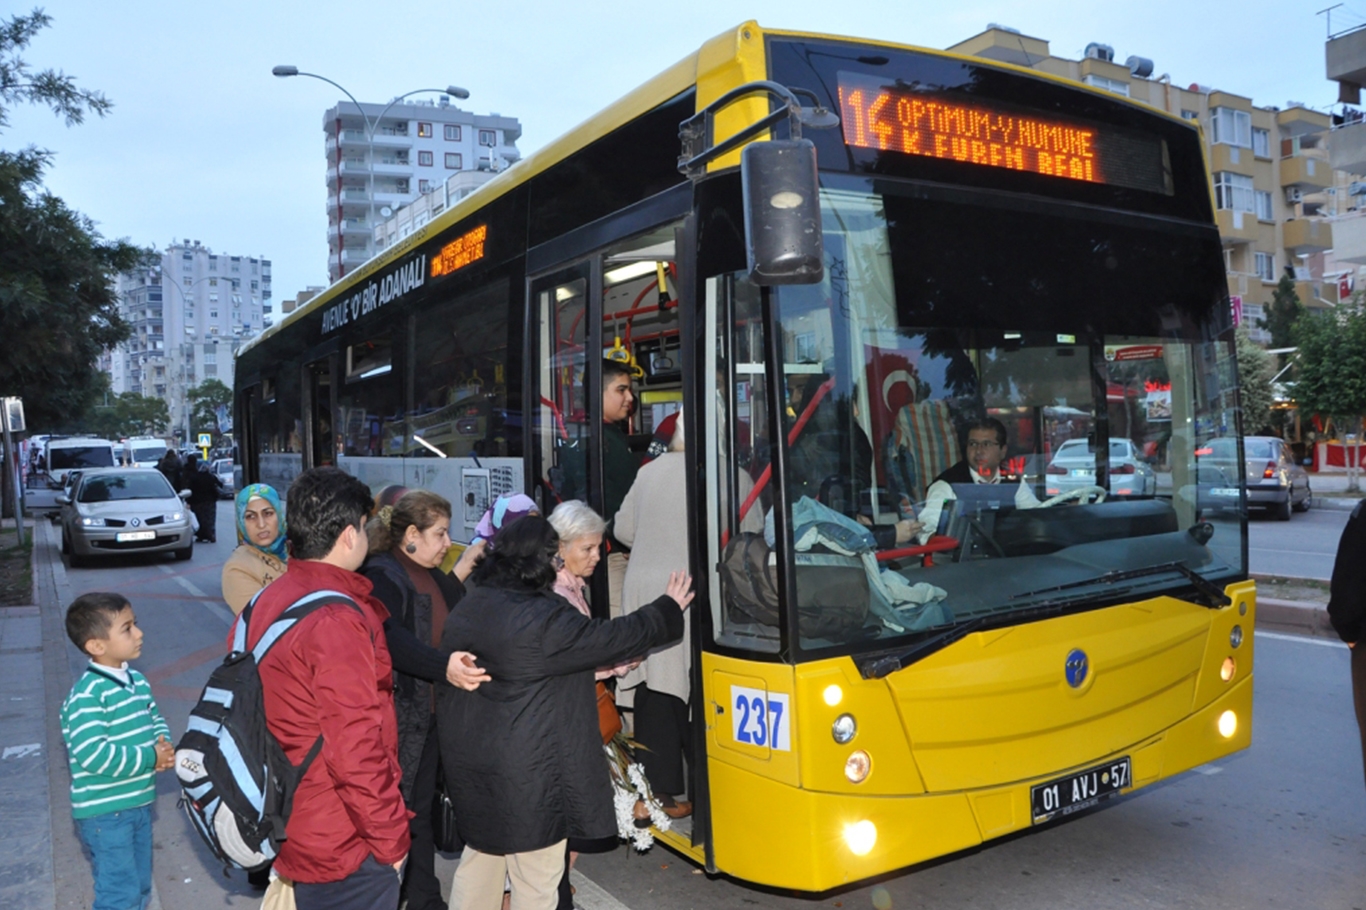 Adana'da toplu taşıma ücretleri ne kadar? Adana ulaşım ücretleri